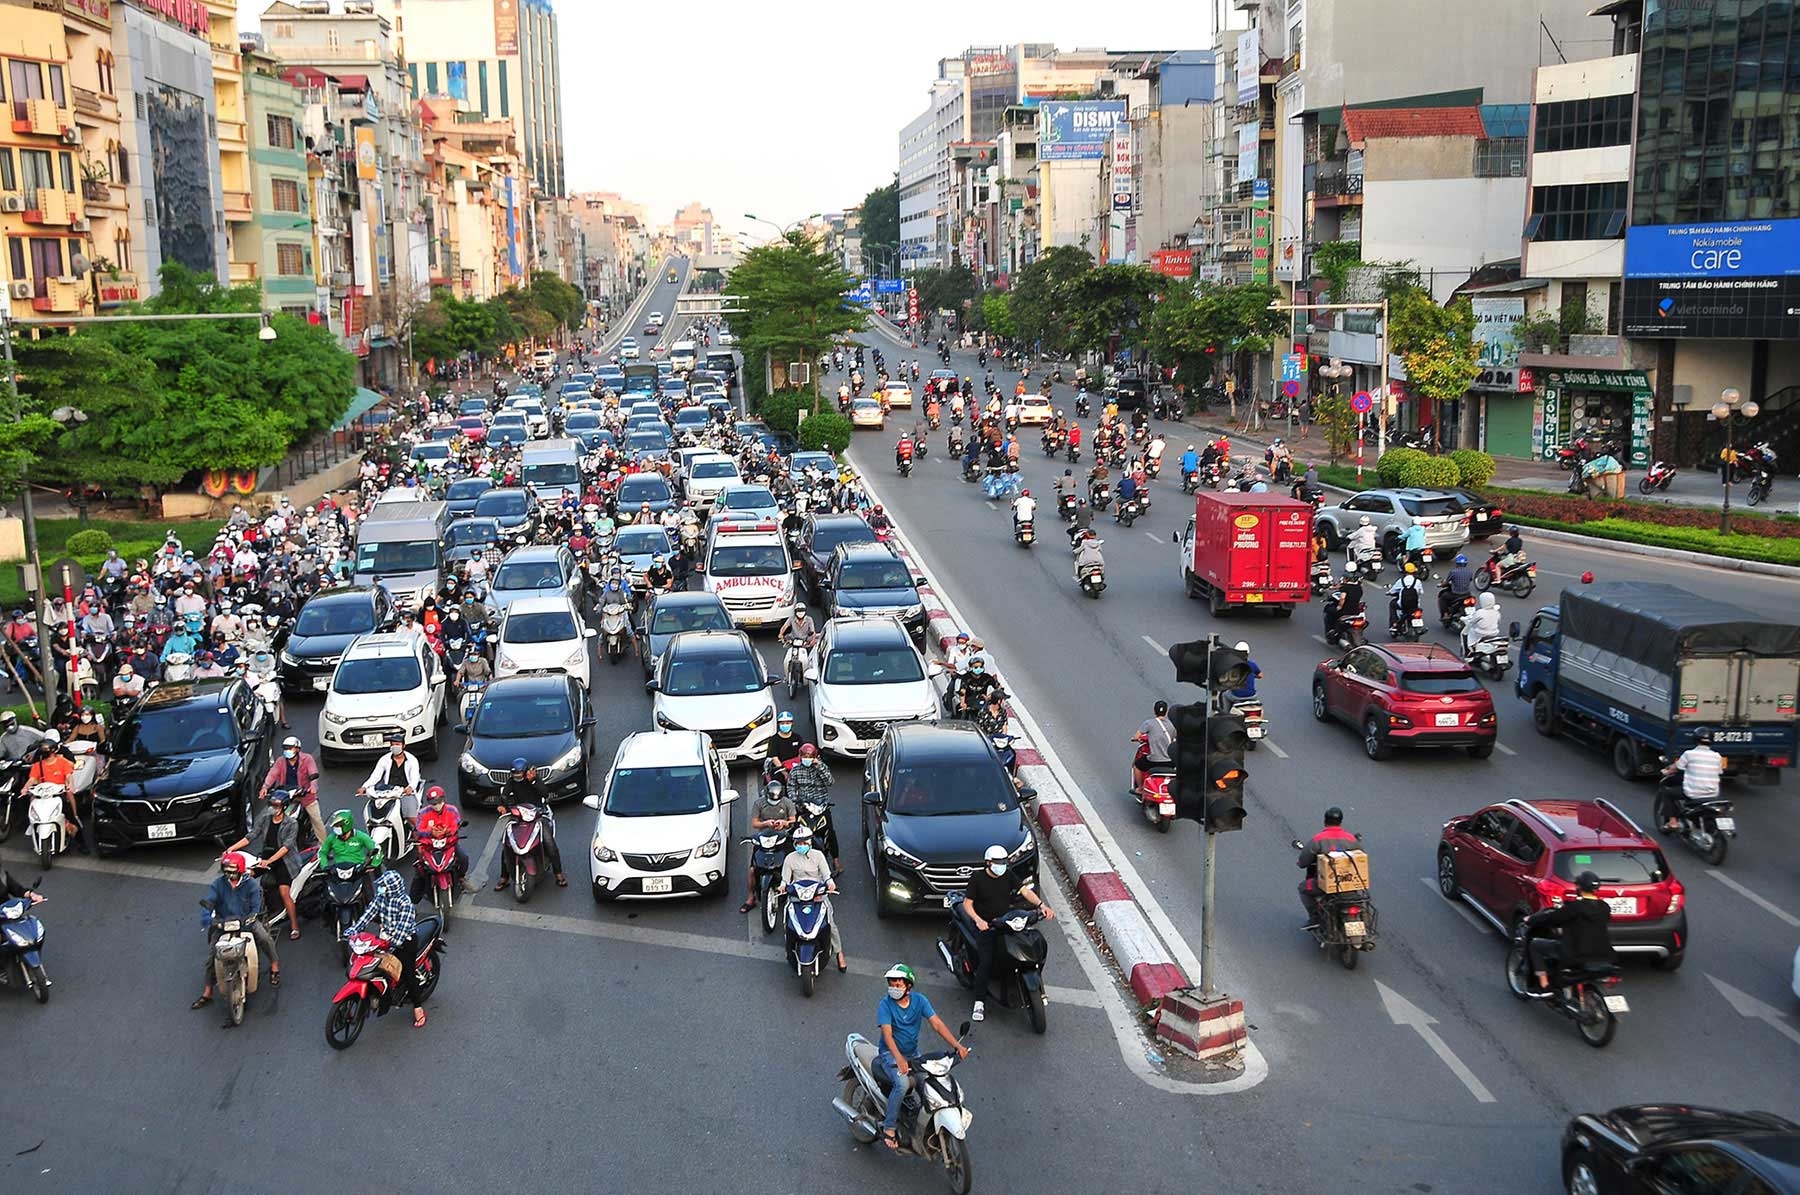 Nhịp sống ở các thành phố lớn của Việt Nam luôn vô cùng sôi động và hấp dẫn. Hãy cùng thưởng thức hình ảnh của những con đường đông đúc, những tiếng cười rộn ràng và những khoảnh khắc tươi vui và tràn ngập sức sống.